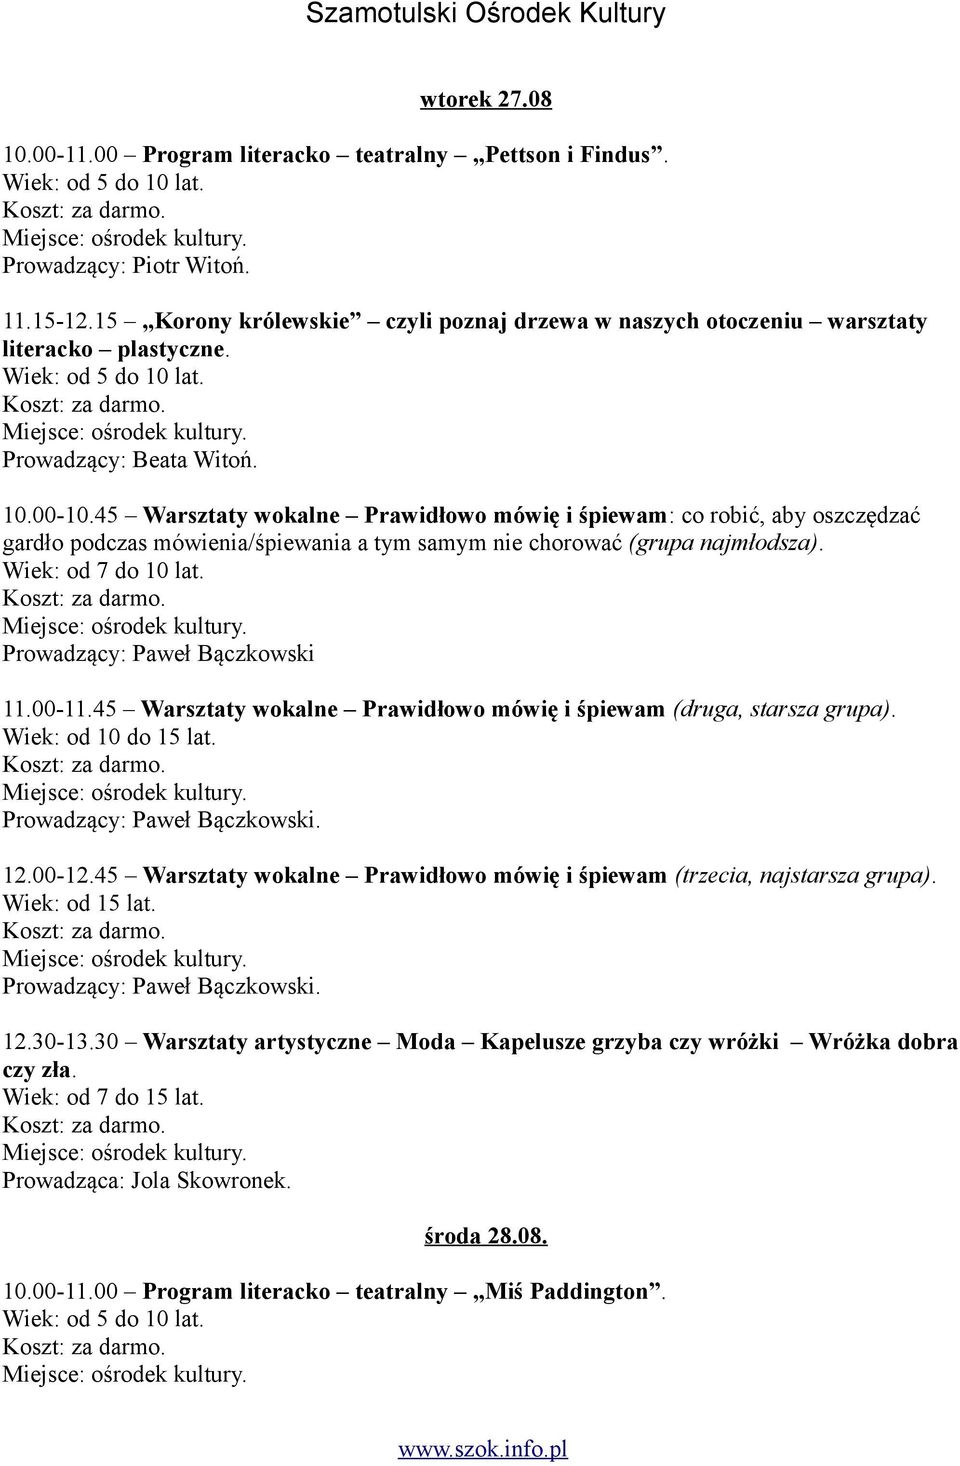 Prowadzący: Paweł Bączkowski 11.00-11.45 Warsztaty wokalne Prawidłowo mówię i śpiewam (druga, starsza grupa). 12.00-12.